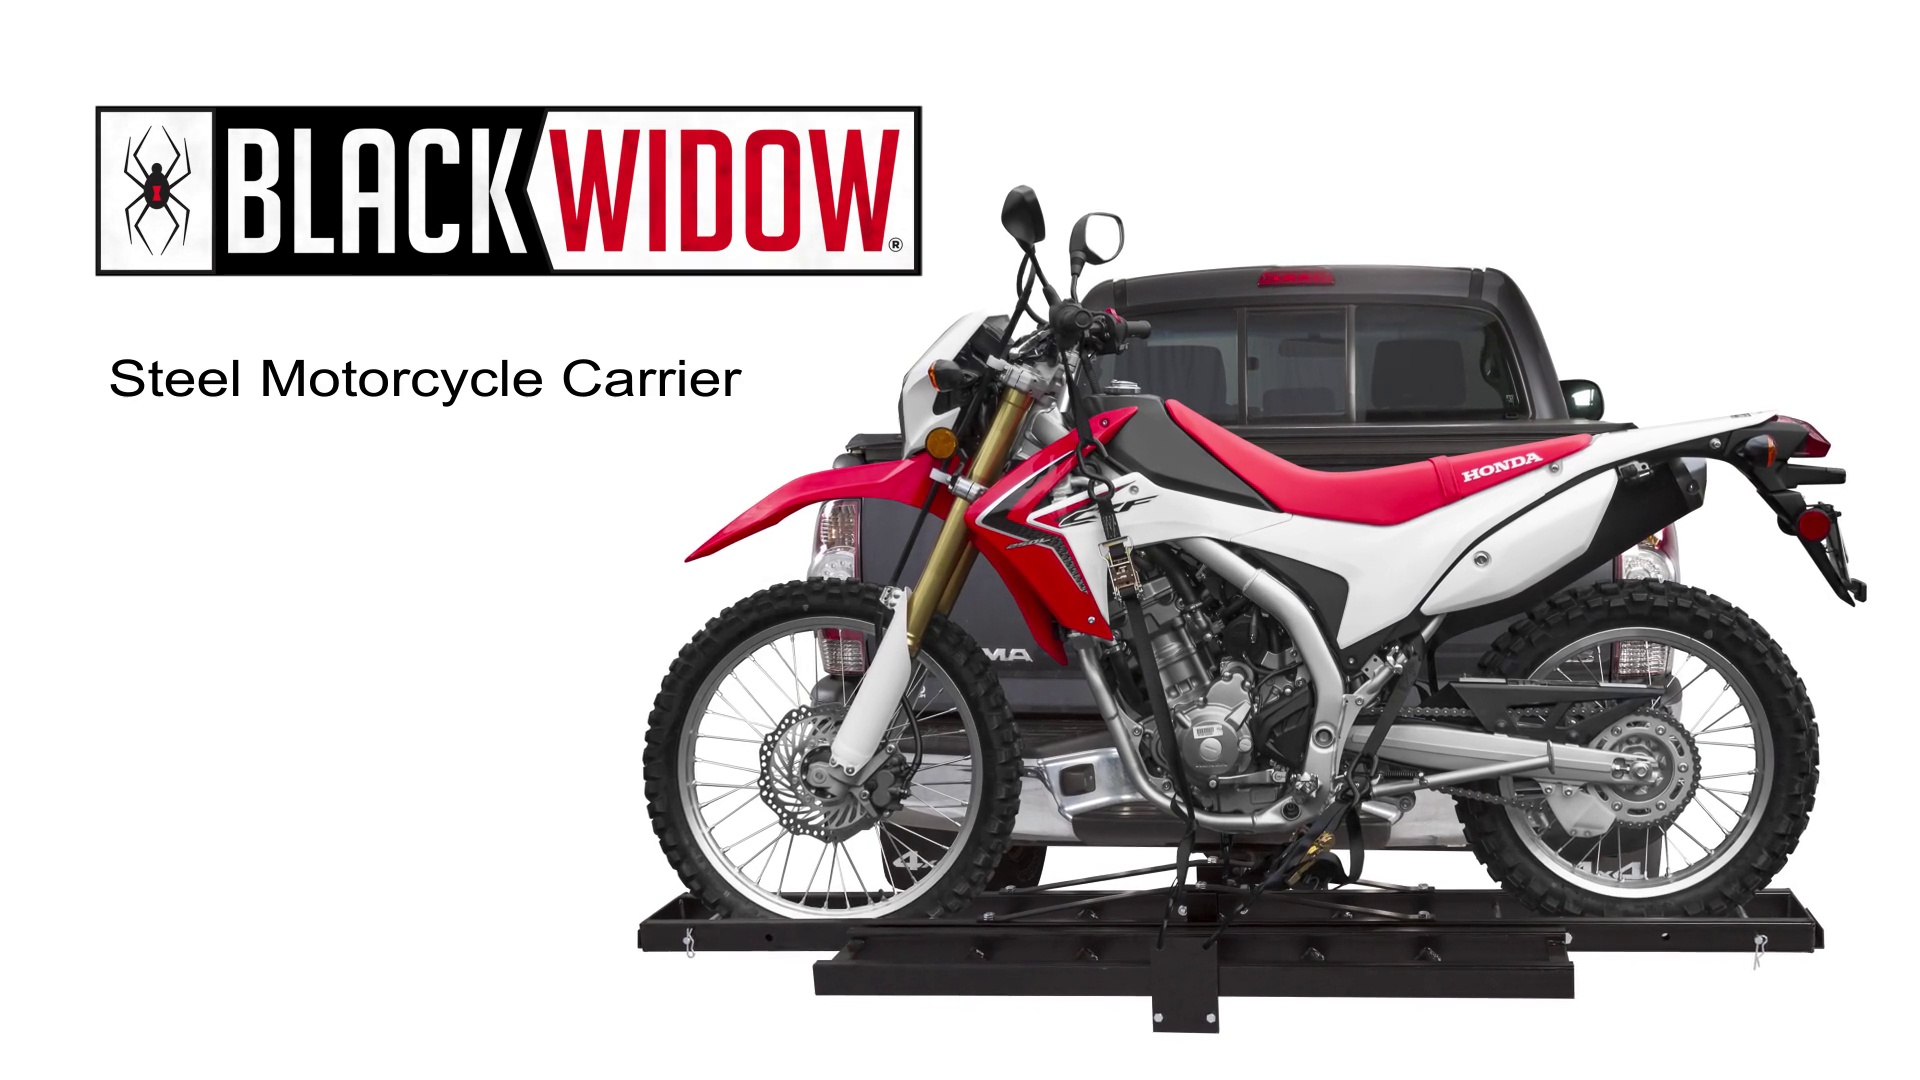 Capacity Black Widow MCC-500 Steel Motorcycle Carrier 500 lb 